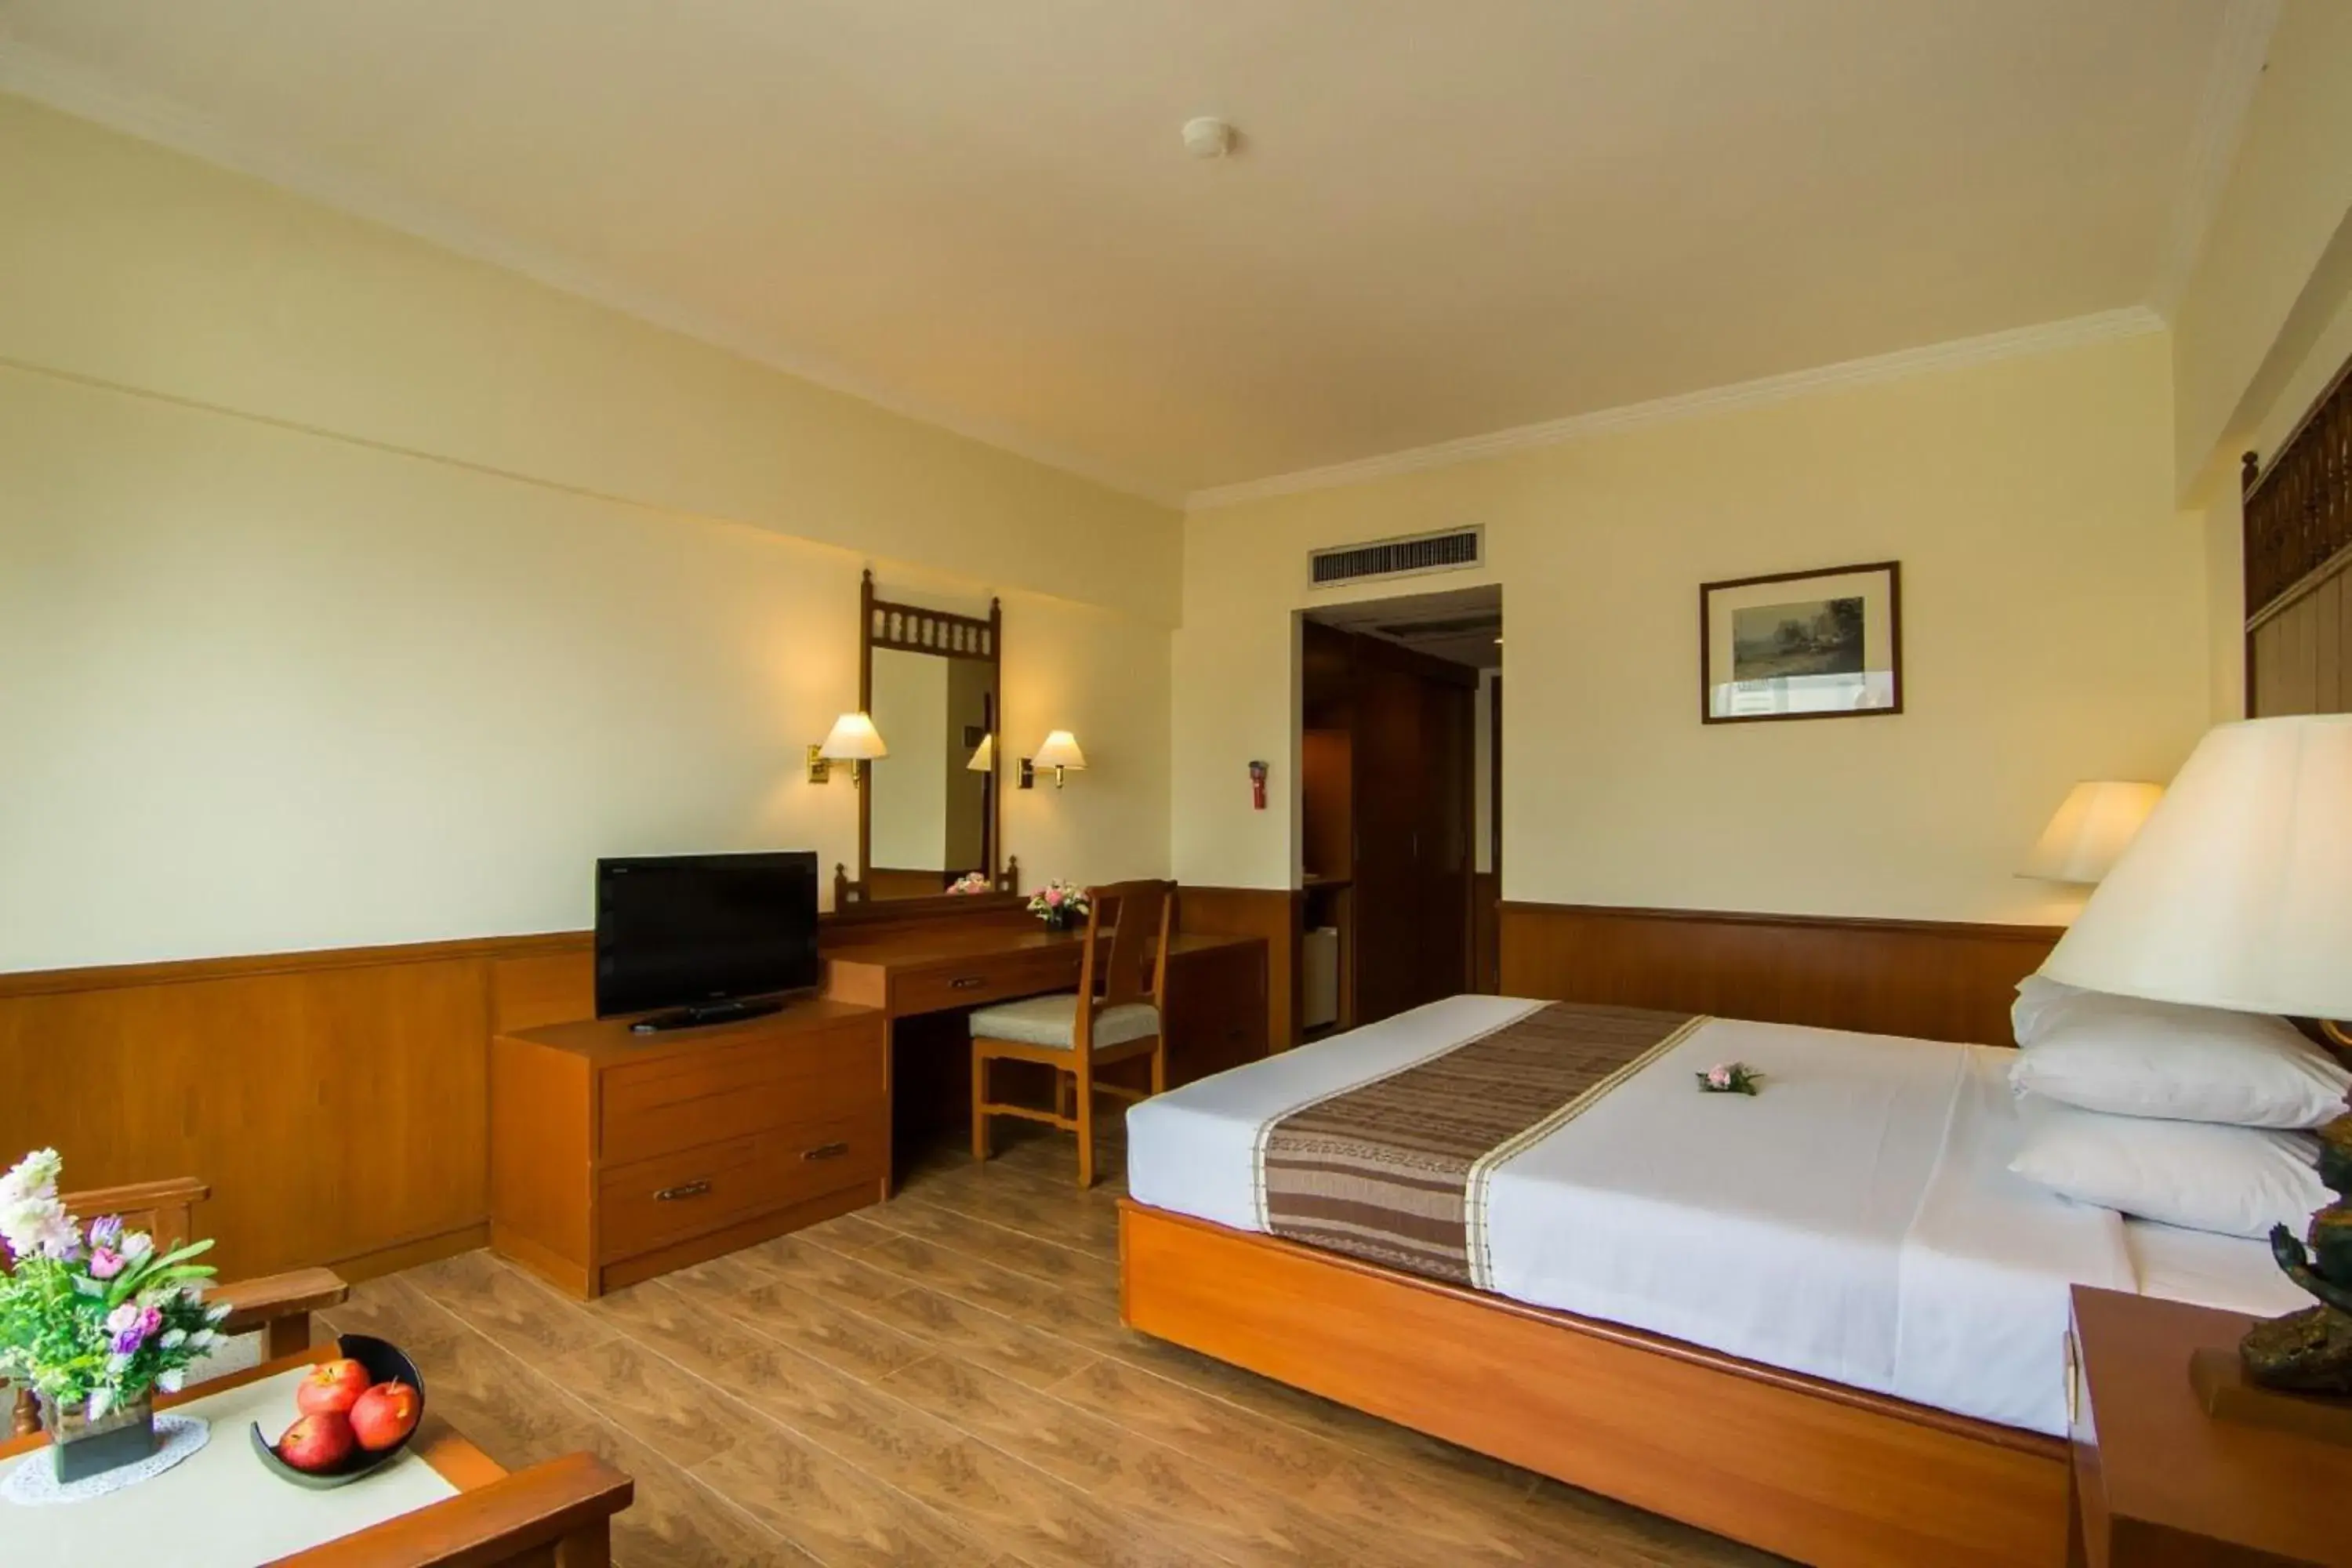 Bedroom in Bangkok Palace Hotel